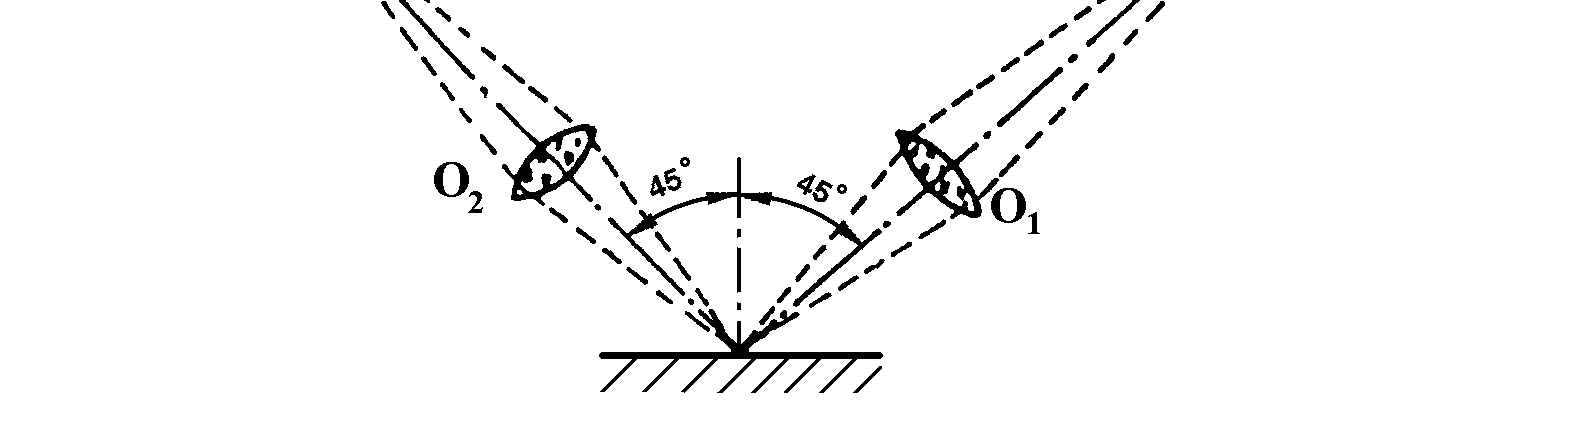 11 Metoda světelného řezu princip a obraz v okuláru Rovnoběžný svazek paprsků omezený štěrbinou do tvaru velmi tenké světelné roviny je promítán optickým systémem pod úhlem 45